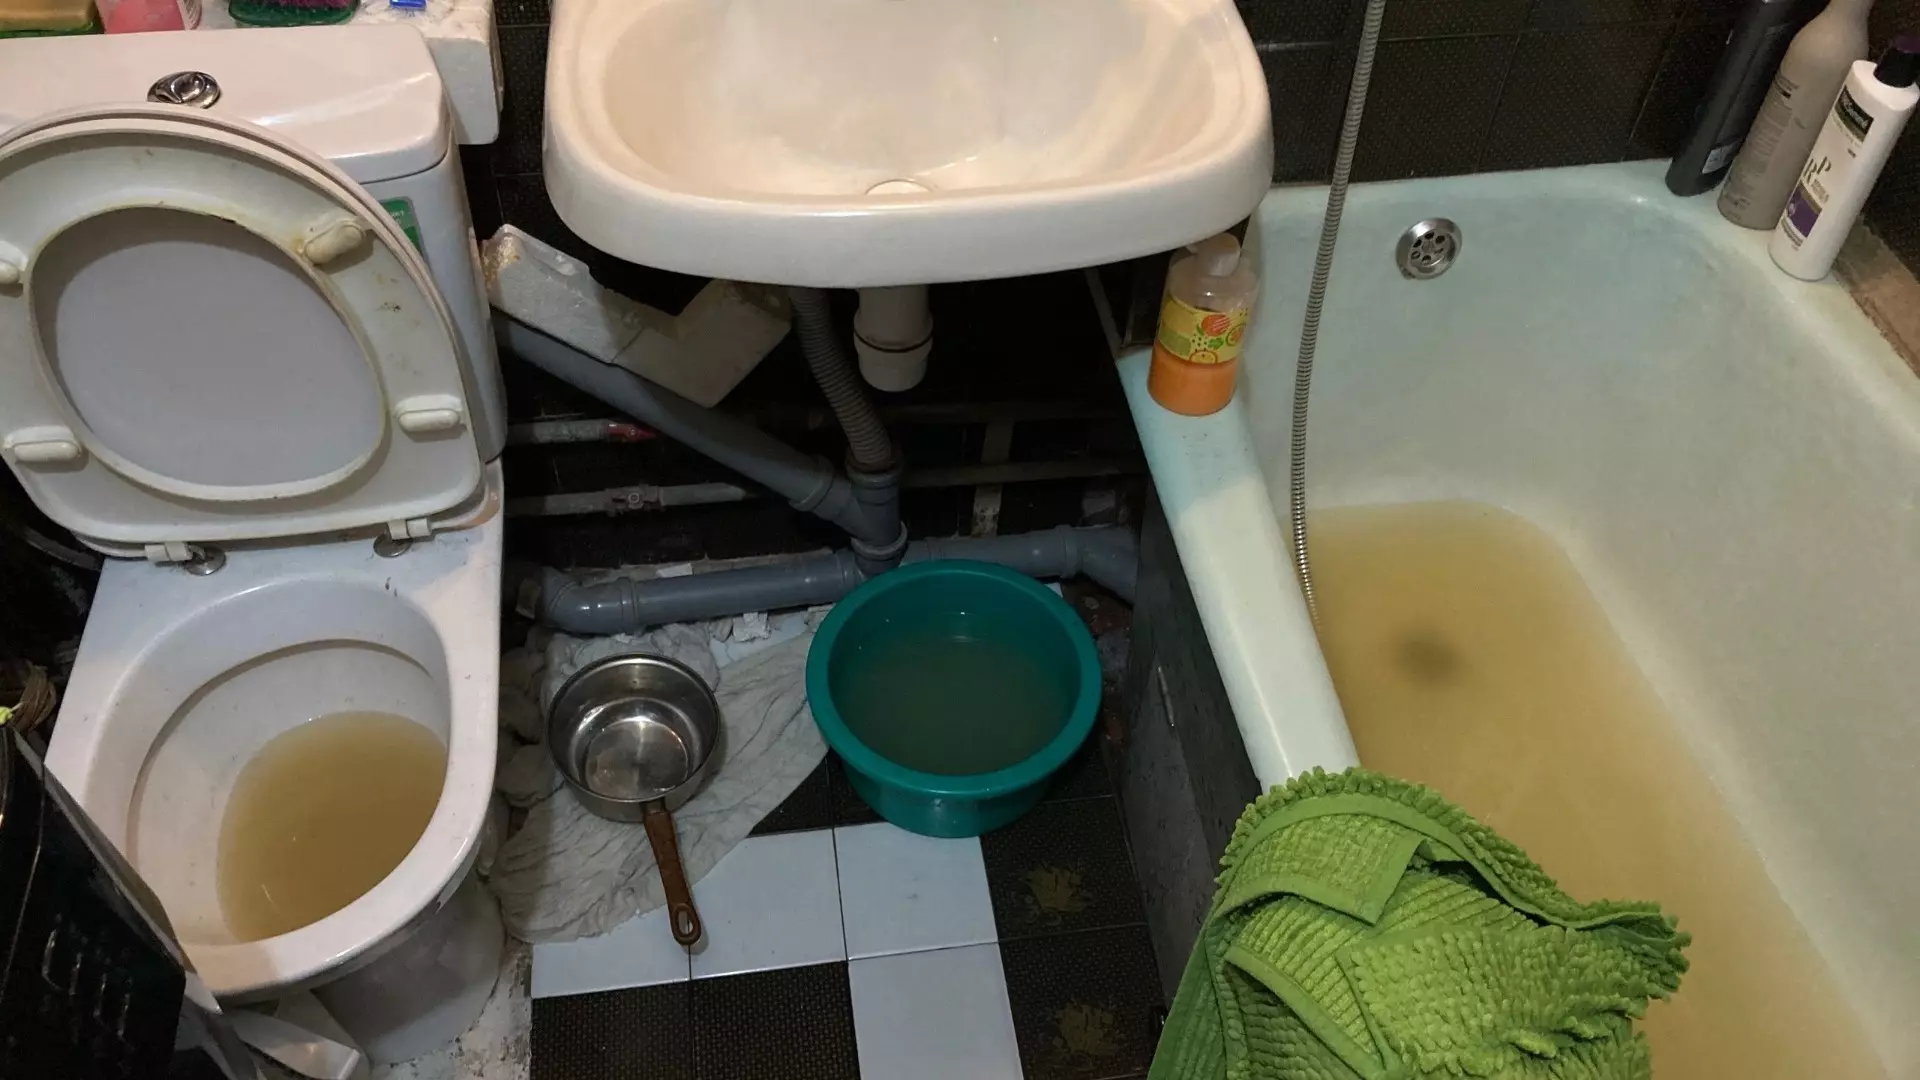 Квартиры омичей затопило нечистотами из канализации из-за засора в стояке